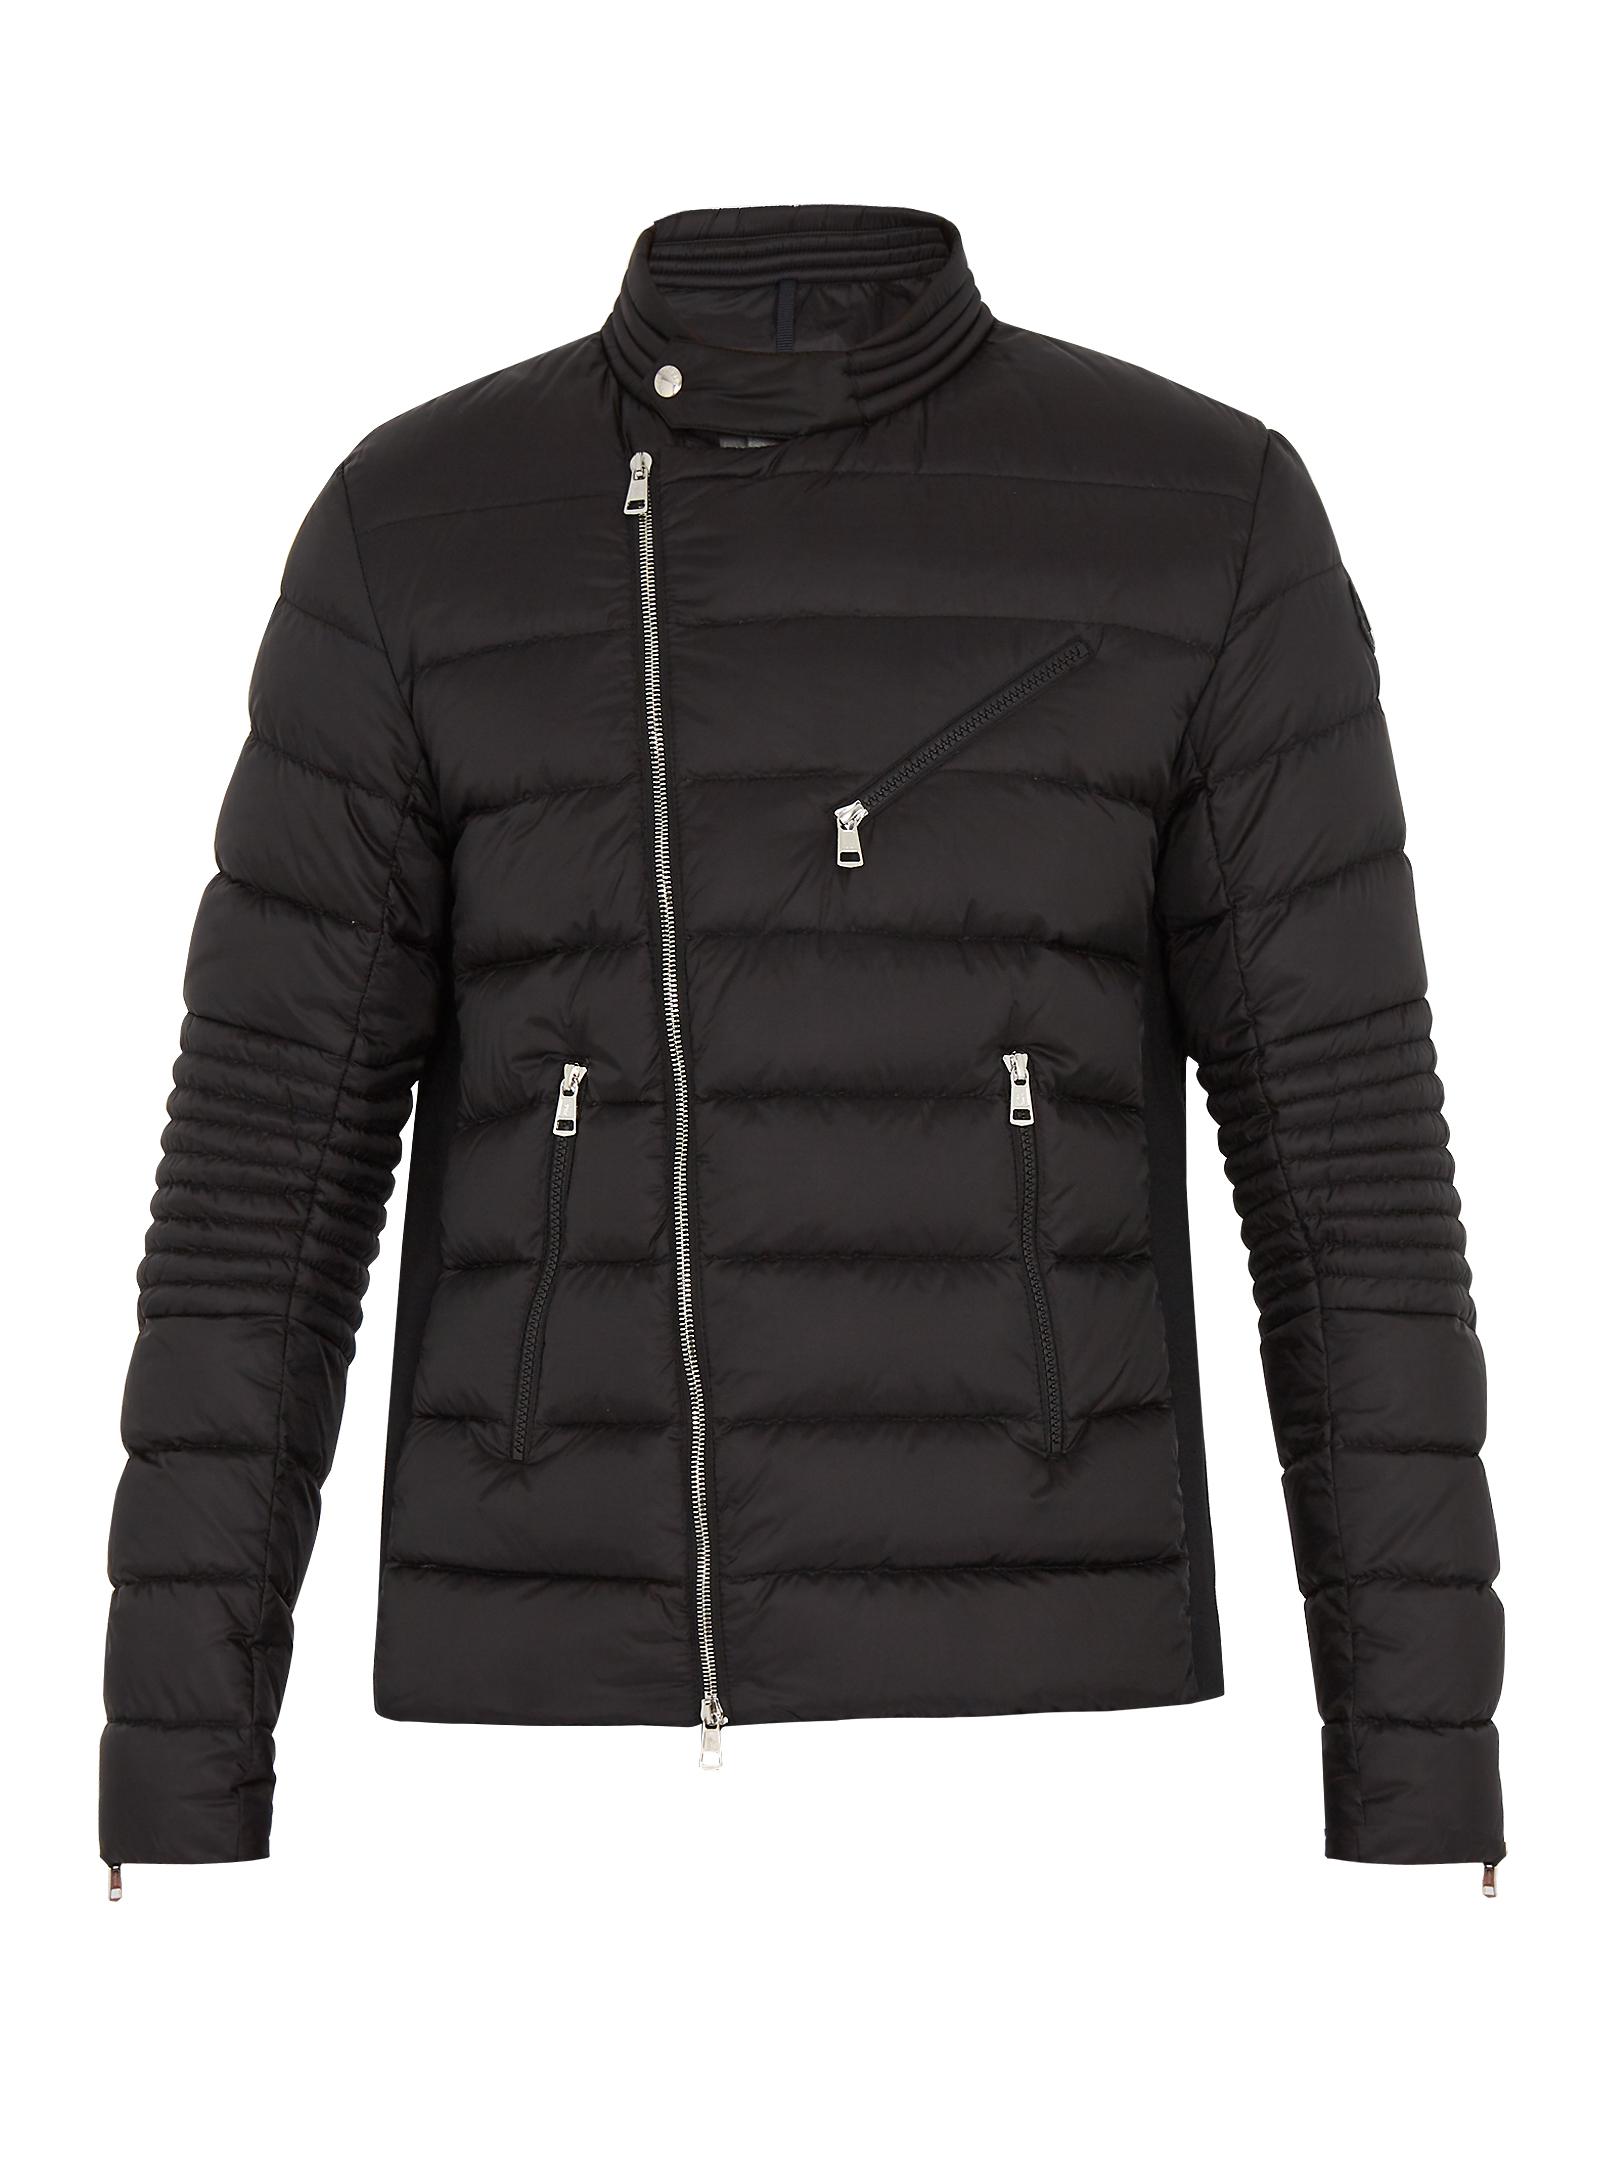 Moncler Synthetic Aubin Down Biker Jacket in Black for Men - Lyst